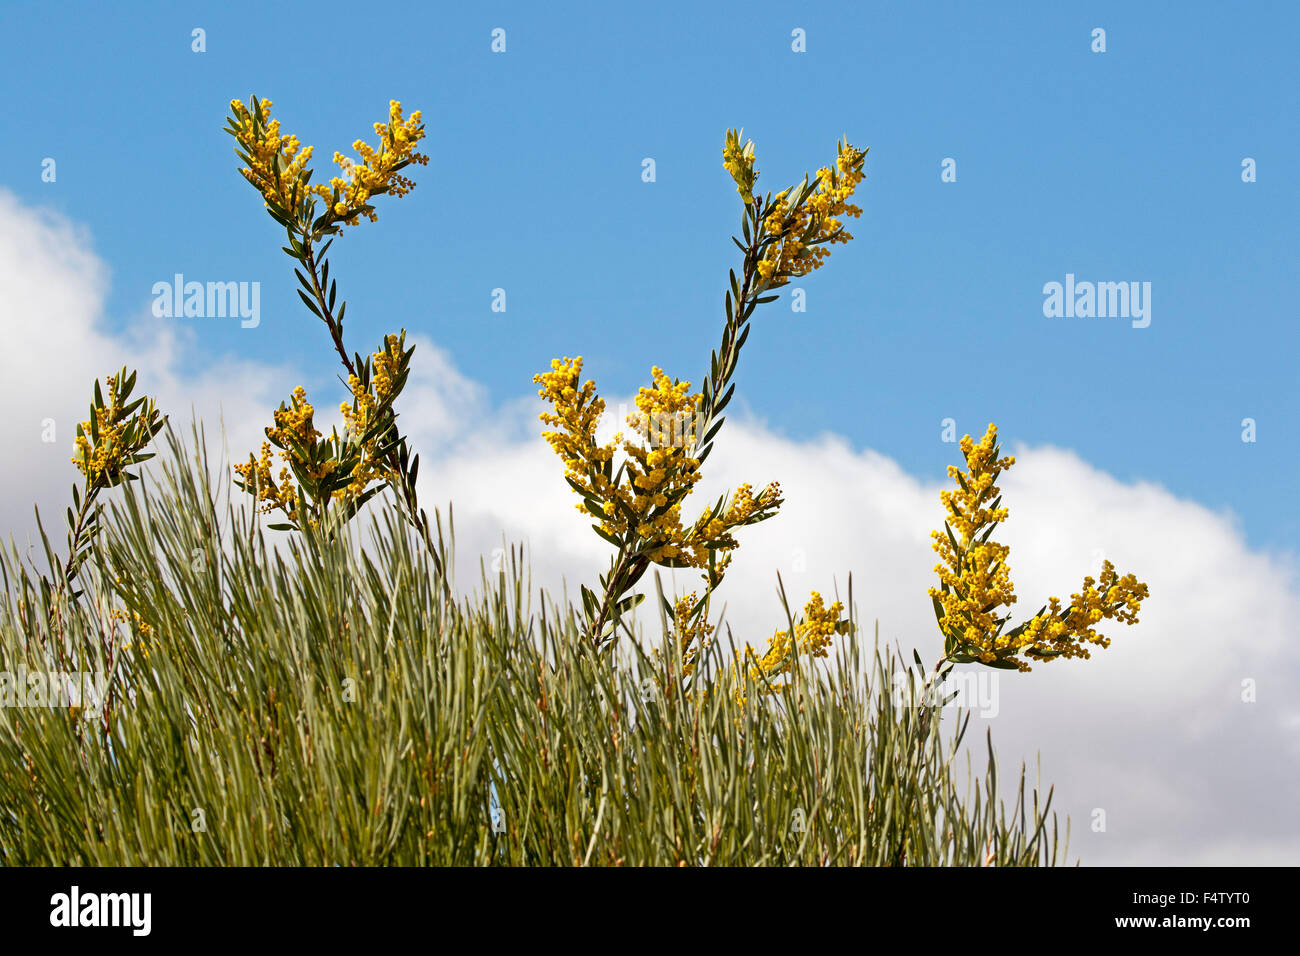 Cluster di giallo dorato di fiori e foglie di Acacia toondulya, albero di bargiglio, fiori selvatici Australiano, contro il cielo blu Foto Stock